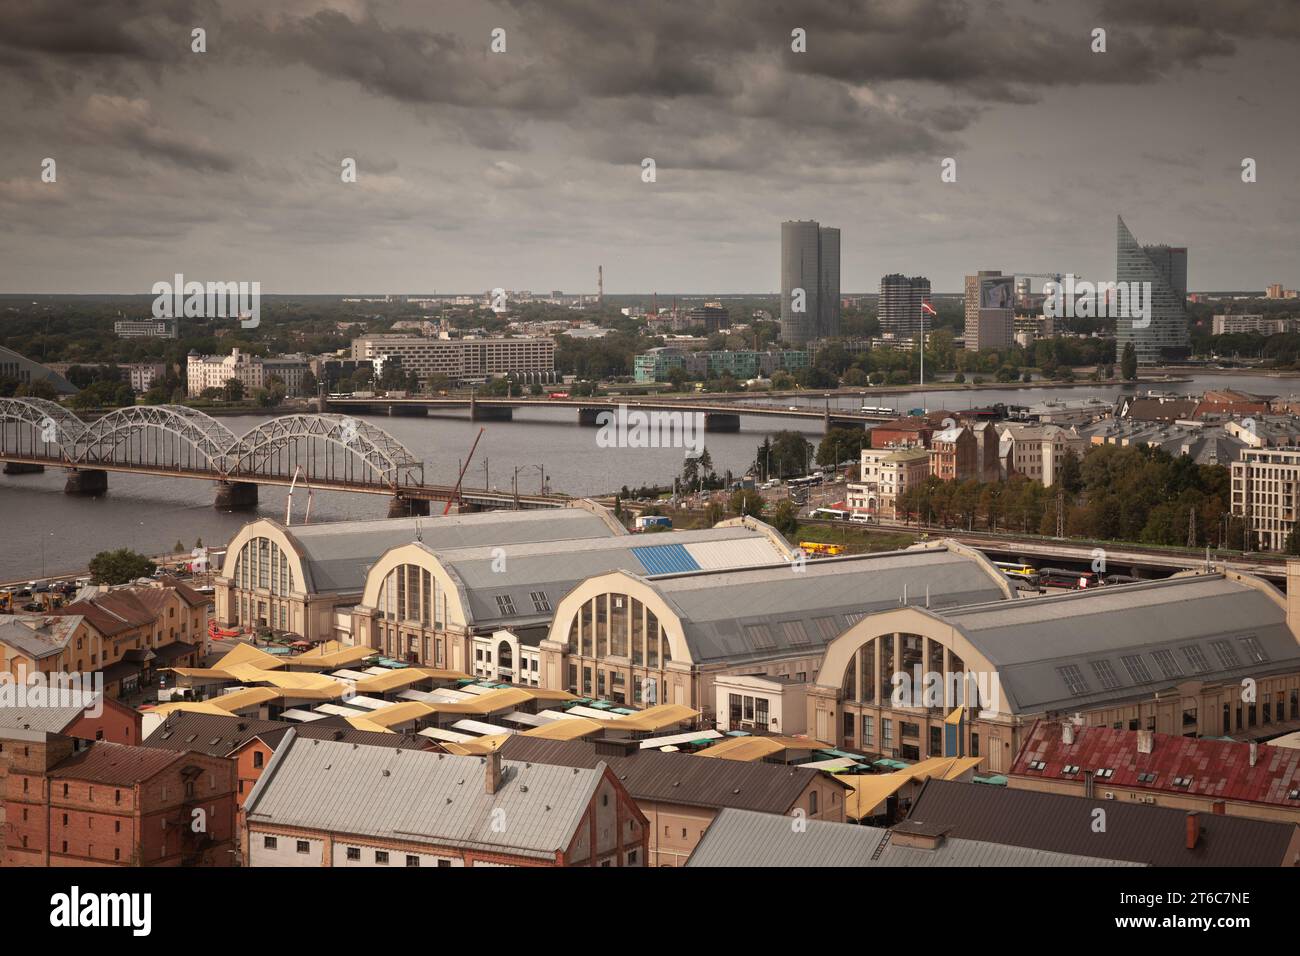 Bild von der Außenseite des Rigaer Zentralmarktes. Riga Central Market ist Europas größter Markt und Basar in Riga, Lettland. Stockfoto